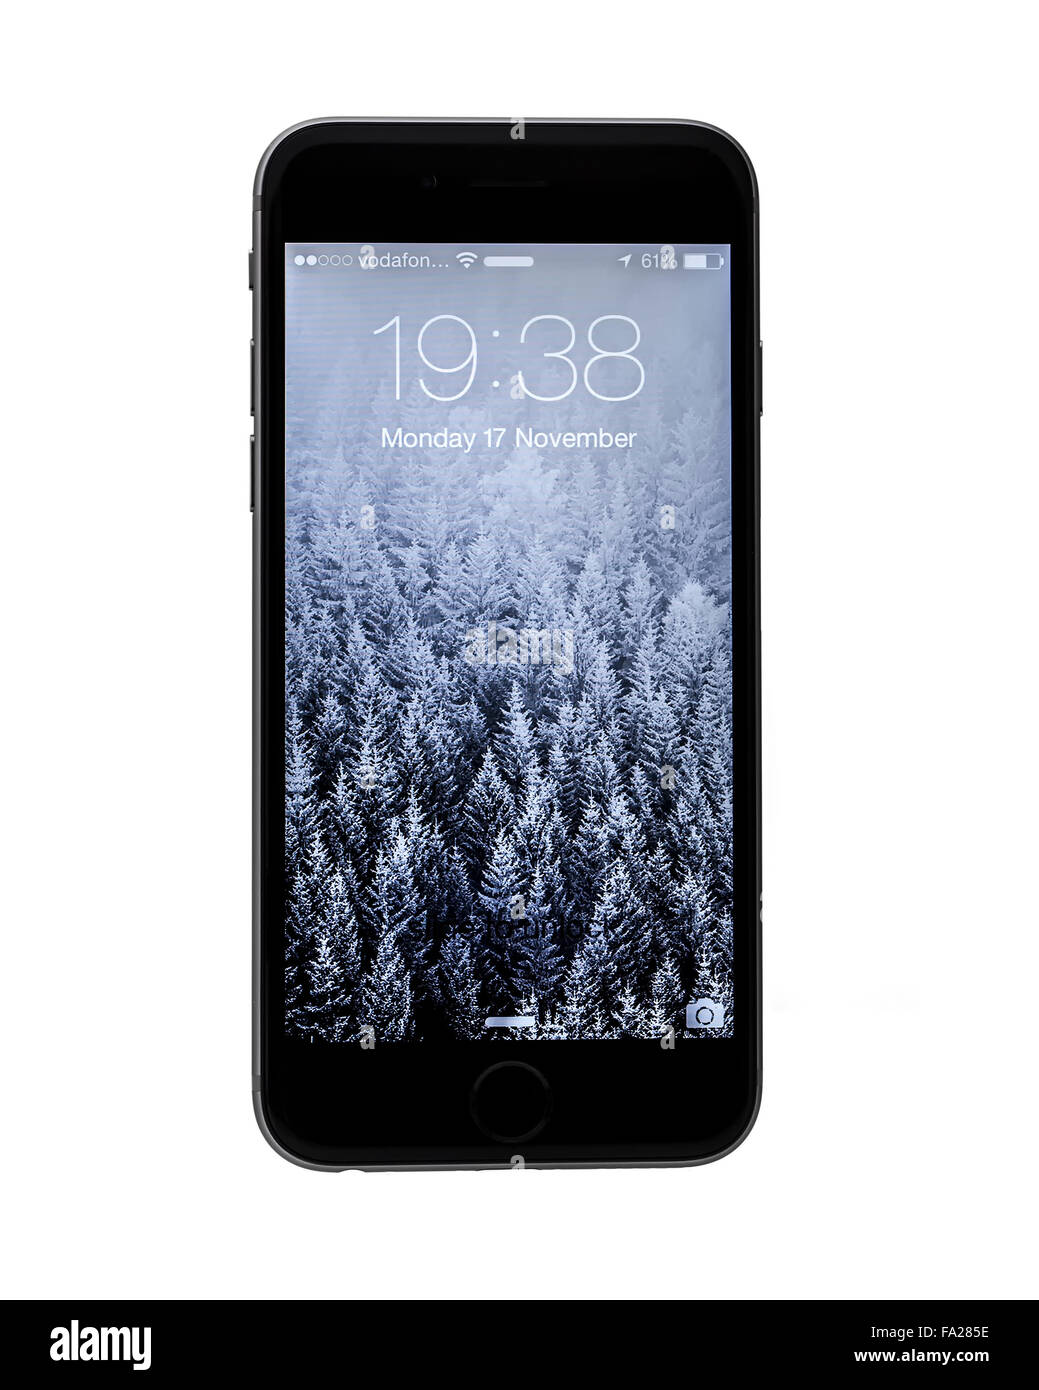 Chiếc iPhone 6 trắng với hệ điều hành IOS 8 đang chờ đợi bạn khám phá. Với thiết kế đơn giản, màu trắng tinh khôi và tính năng cao cấp, chiếc điện thoại này sẽ đáp ứng tất cả nhu cầu giải trí của bạn.